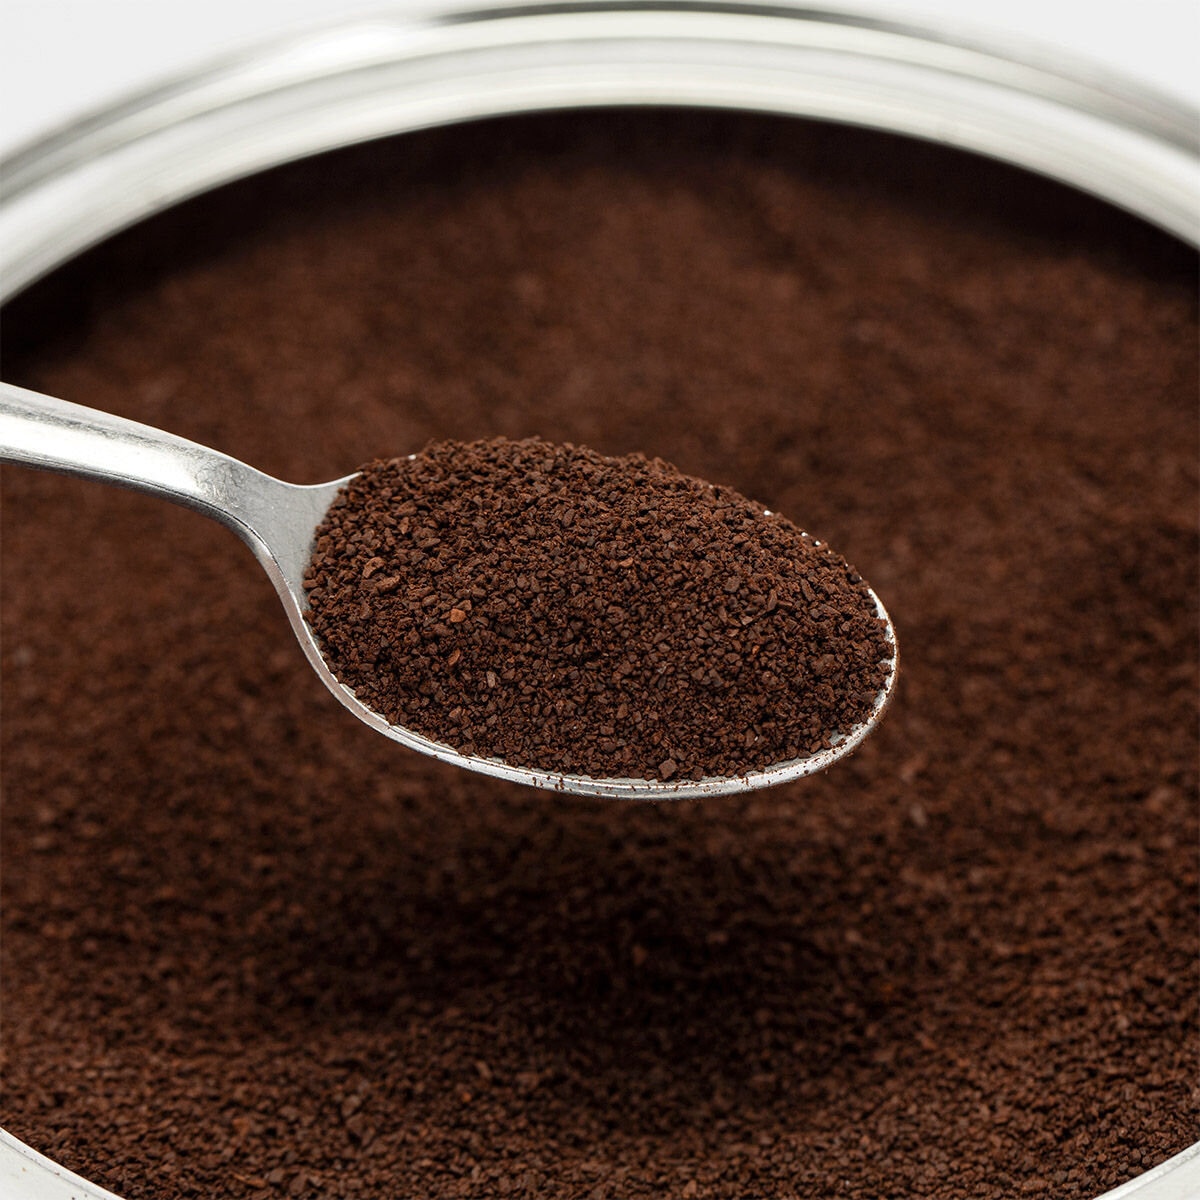 Kirkland Signature 科克蘭 減咖啡因深焙濾泡式咖啡 1.36公斤